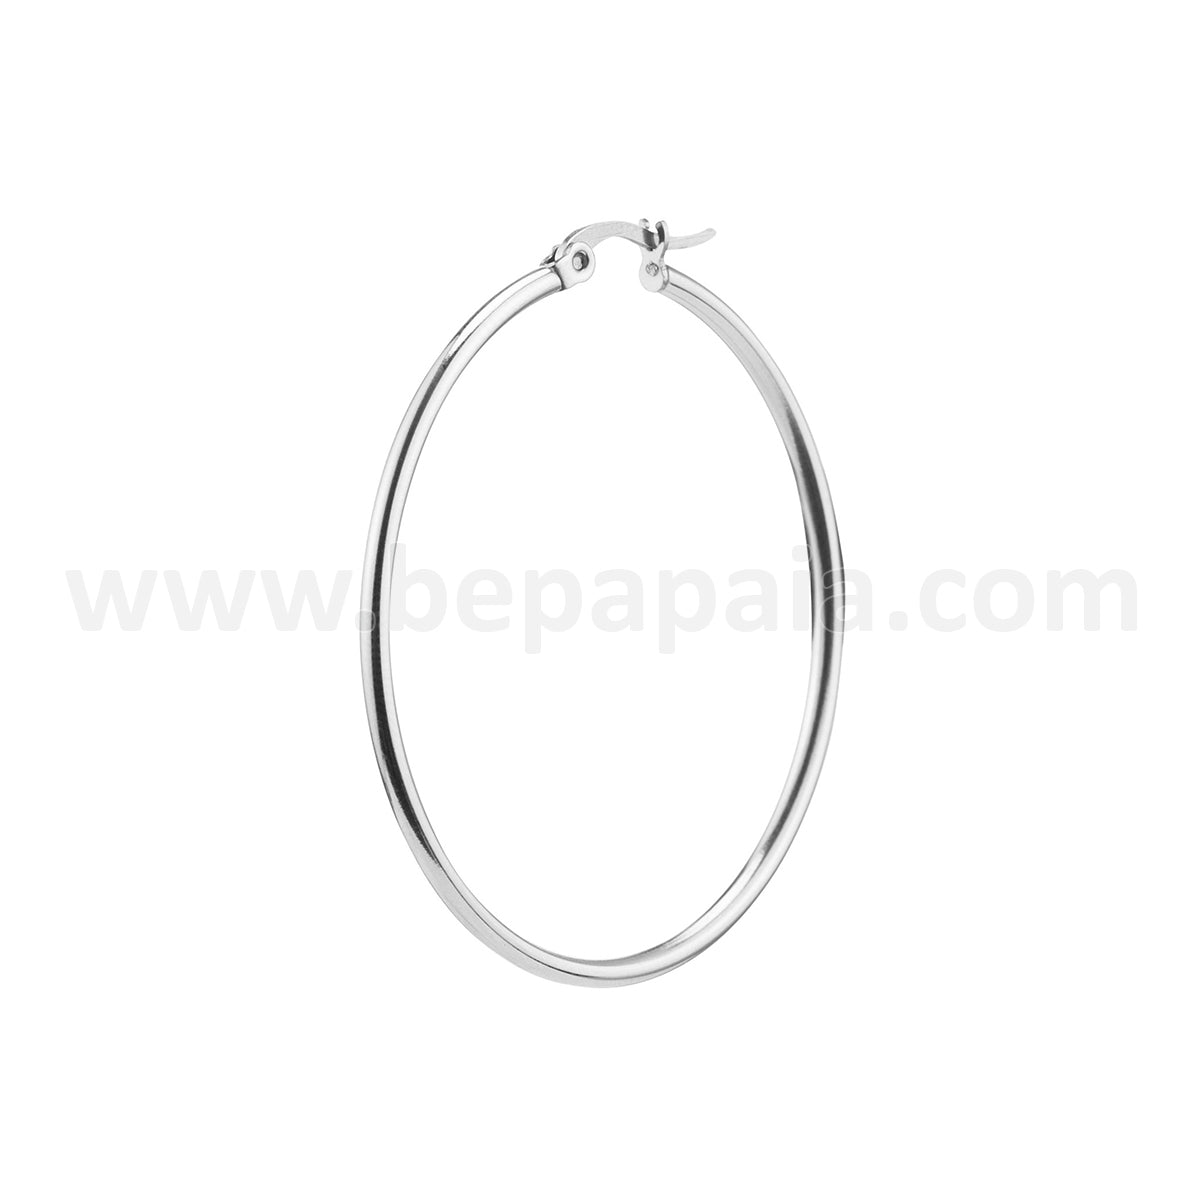 Stainless steel hoop earrings 20-45mm 